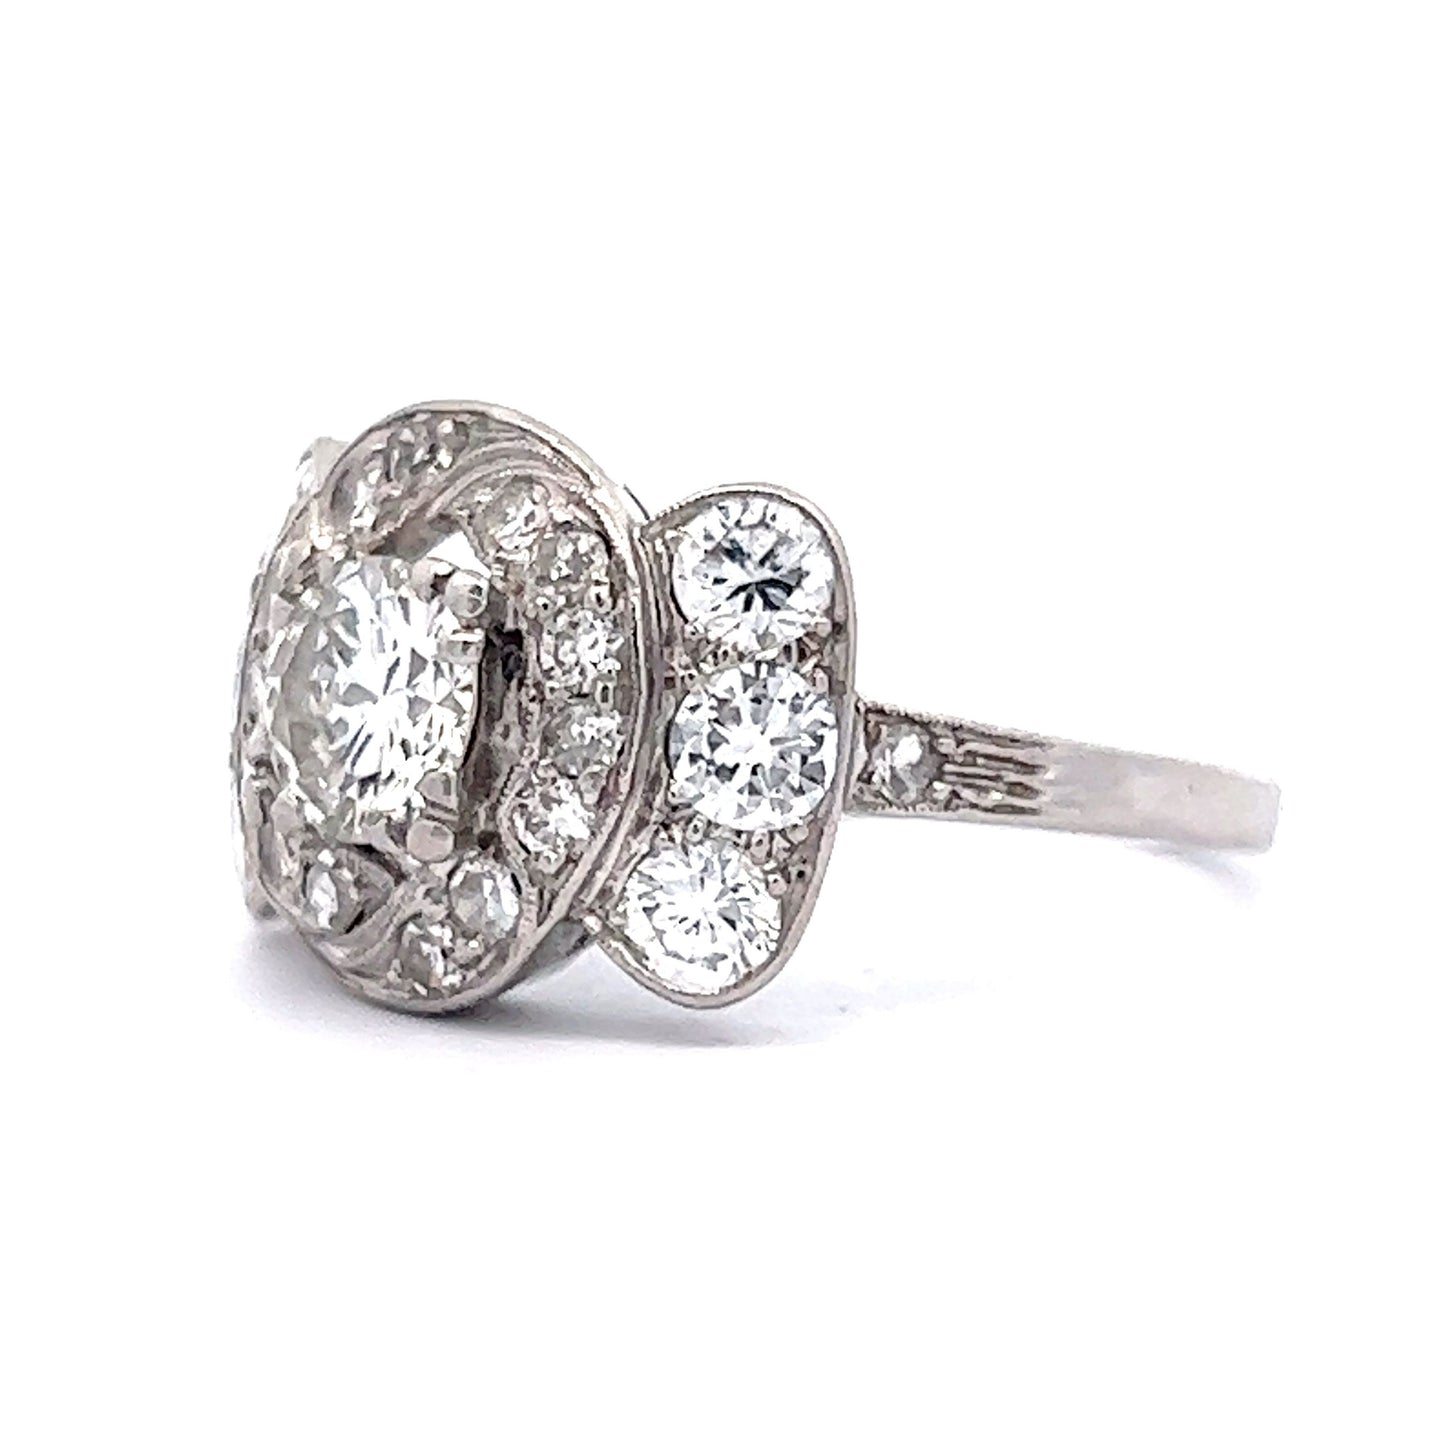 2.21 Art Deco Diamond Cocktail Ring in Platinum